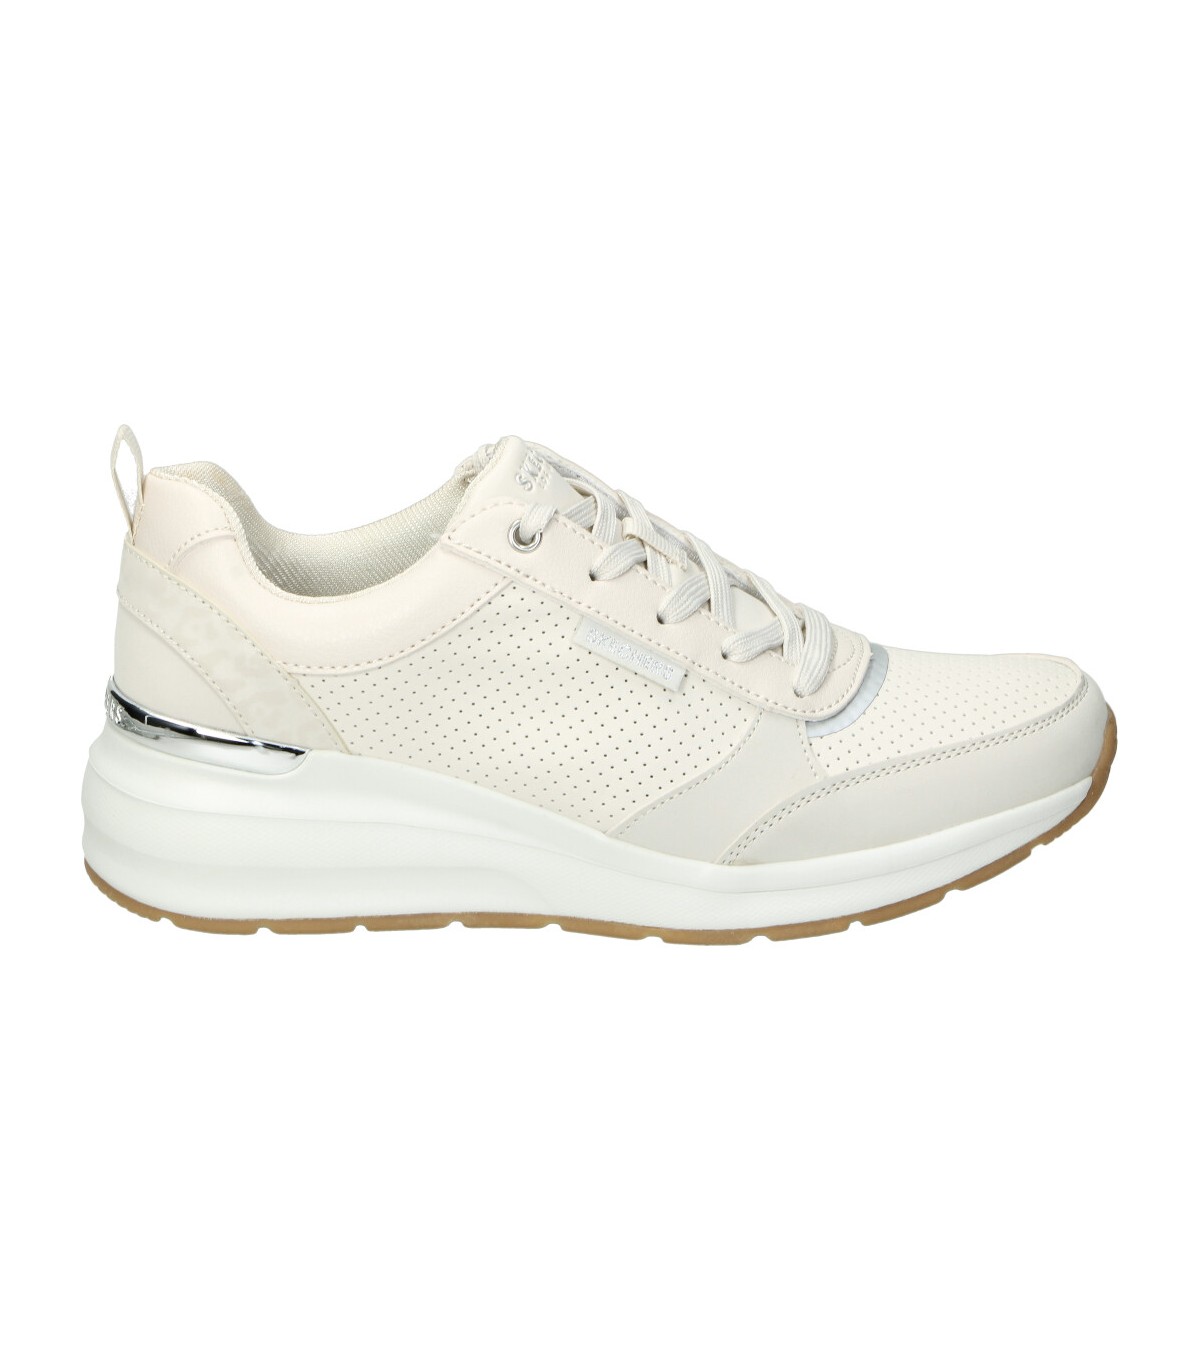 Zapatillas Skechers color blanco online en MEGACALZADO